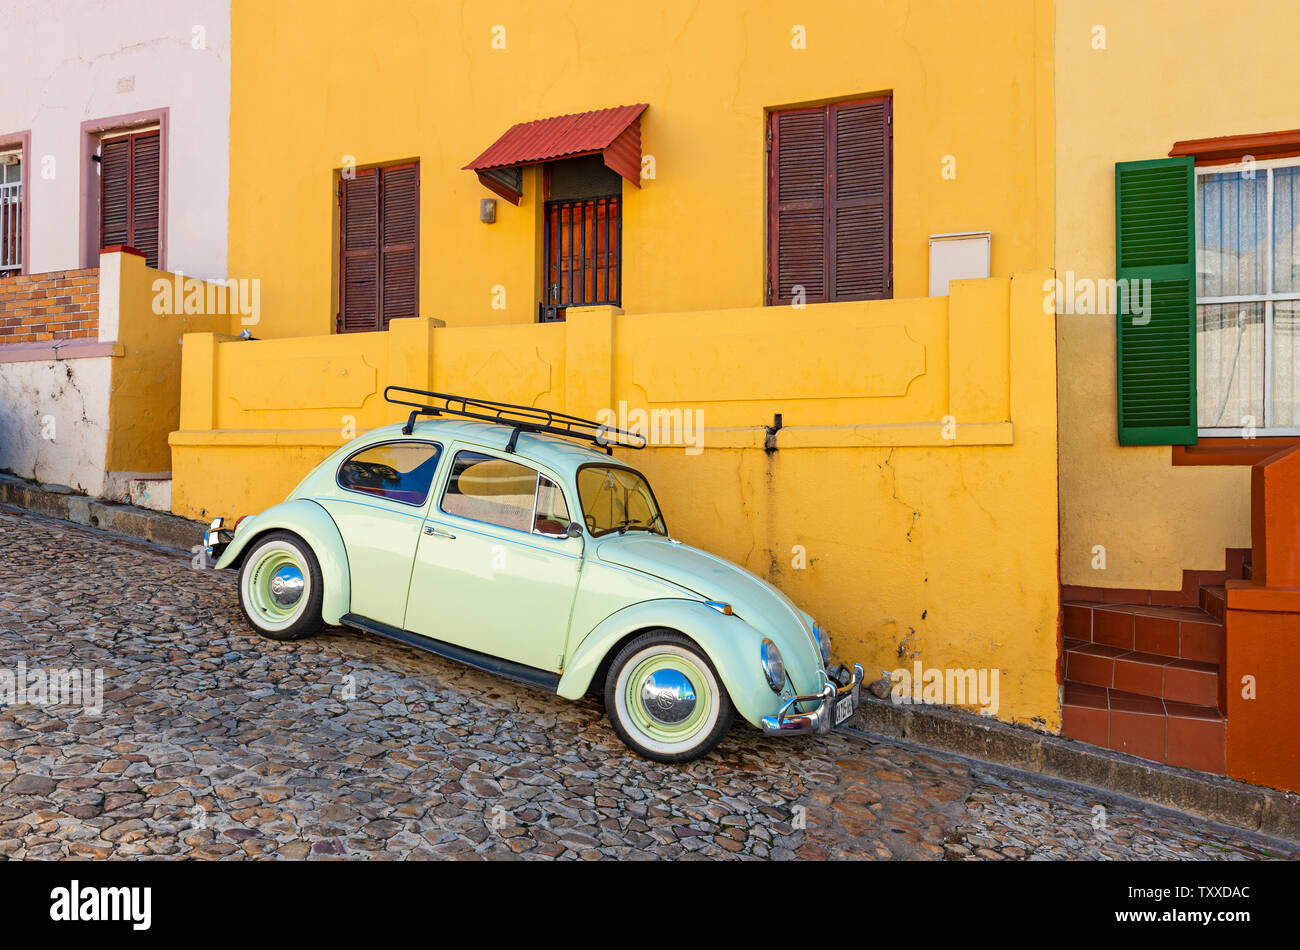 Una vecchia auto d'epoca ristrutturata o un vecchio timer in una strada colorata con facciata arancione del quartiere di Bo Kaap a Città del Capo, Sud Africa. Foto Stock